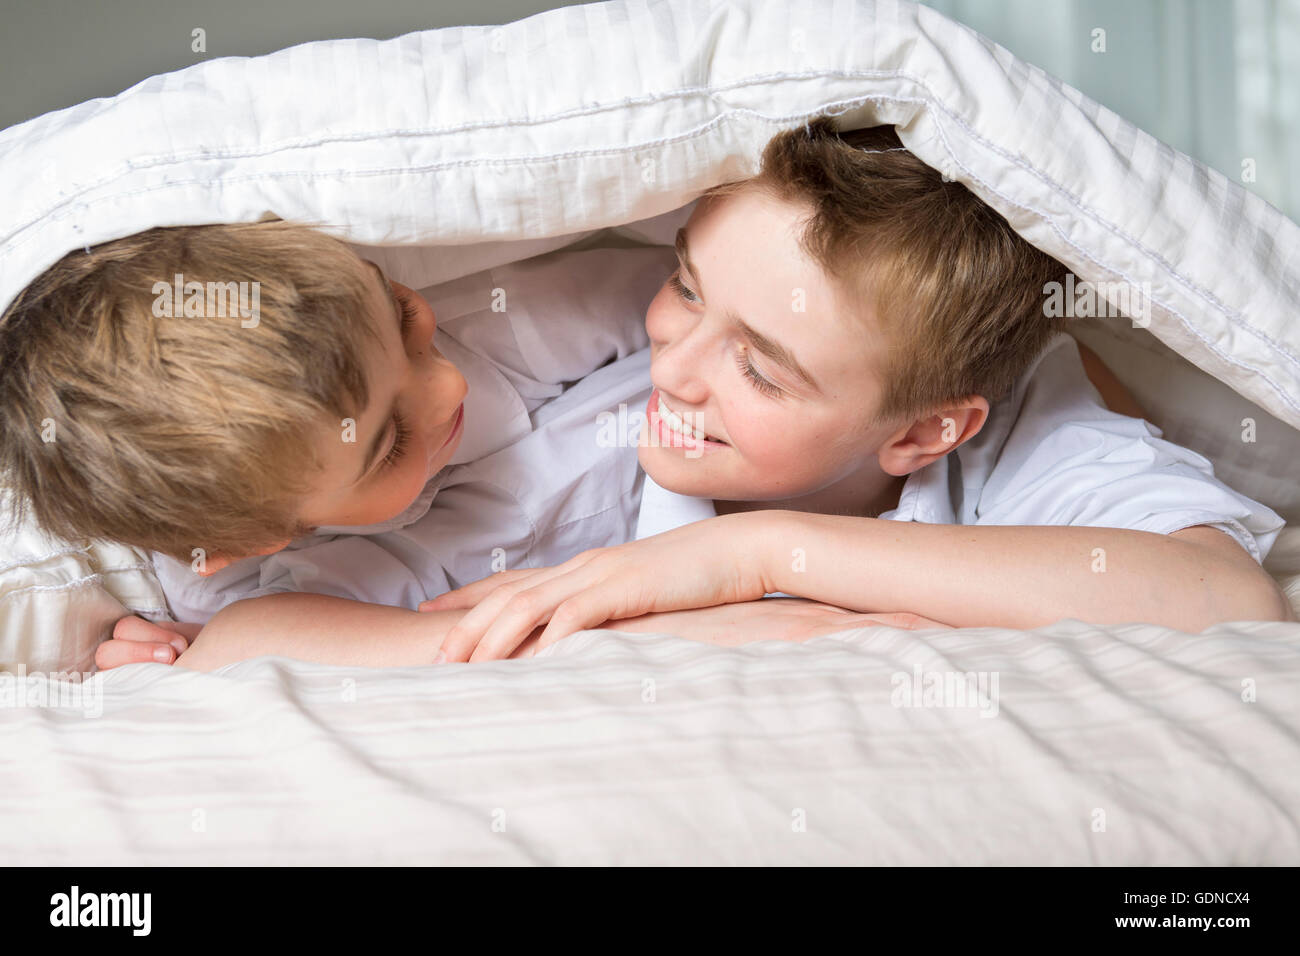 Junge im Bett unter einer weißen Decke Tagesdecke versteckt. Stockfoto